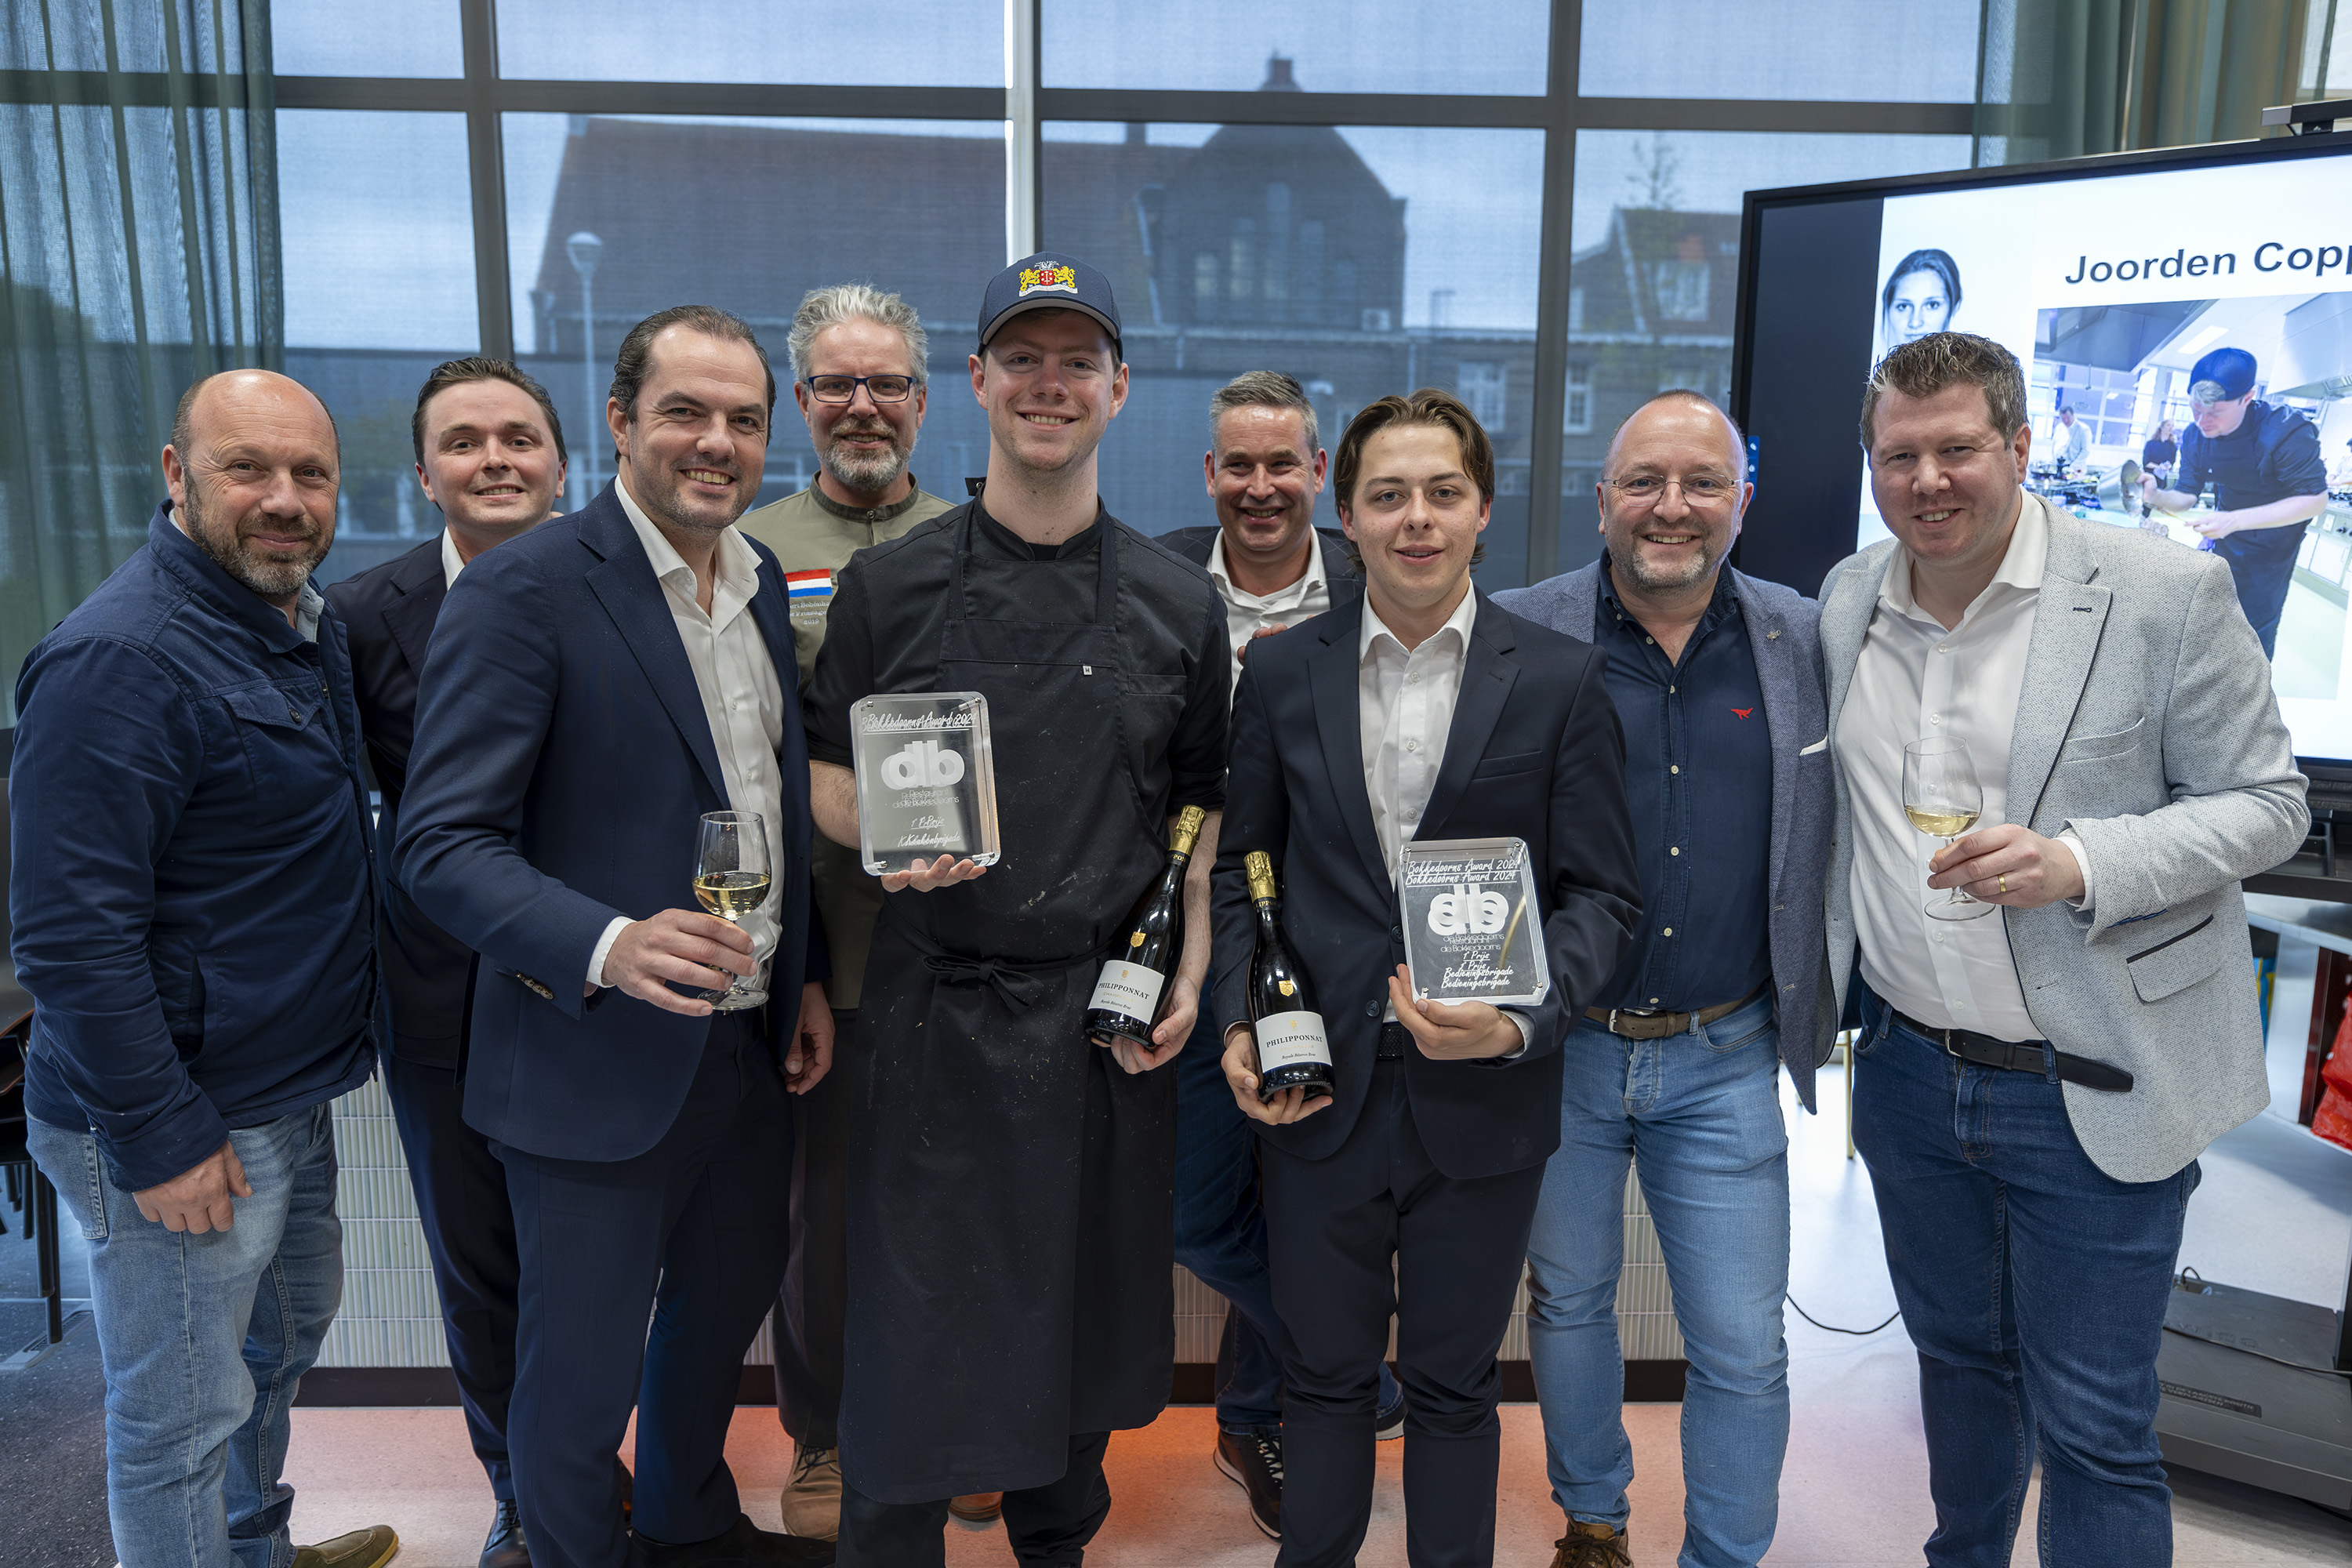 Mees Heesemans en Joorden Coppens van Nova College Hotelschool winnen Bokkedoorns Award